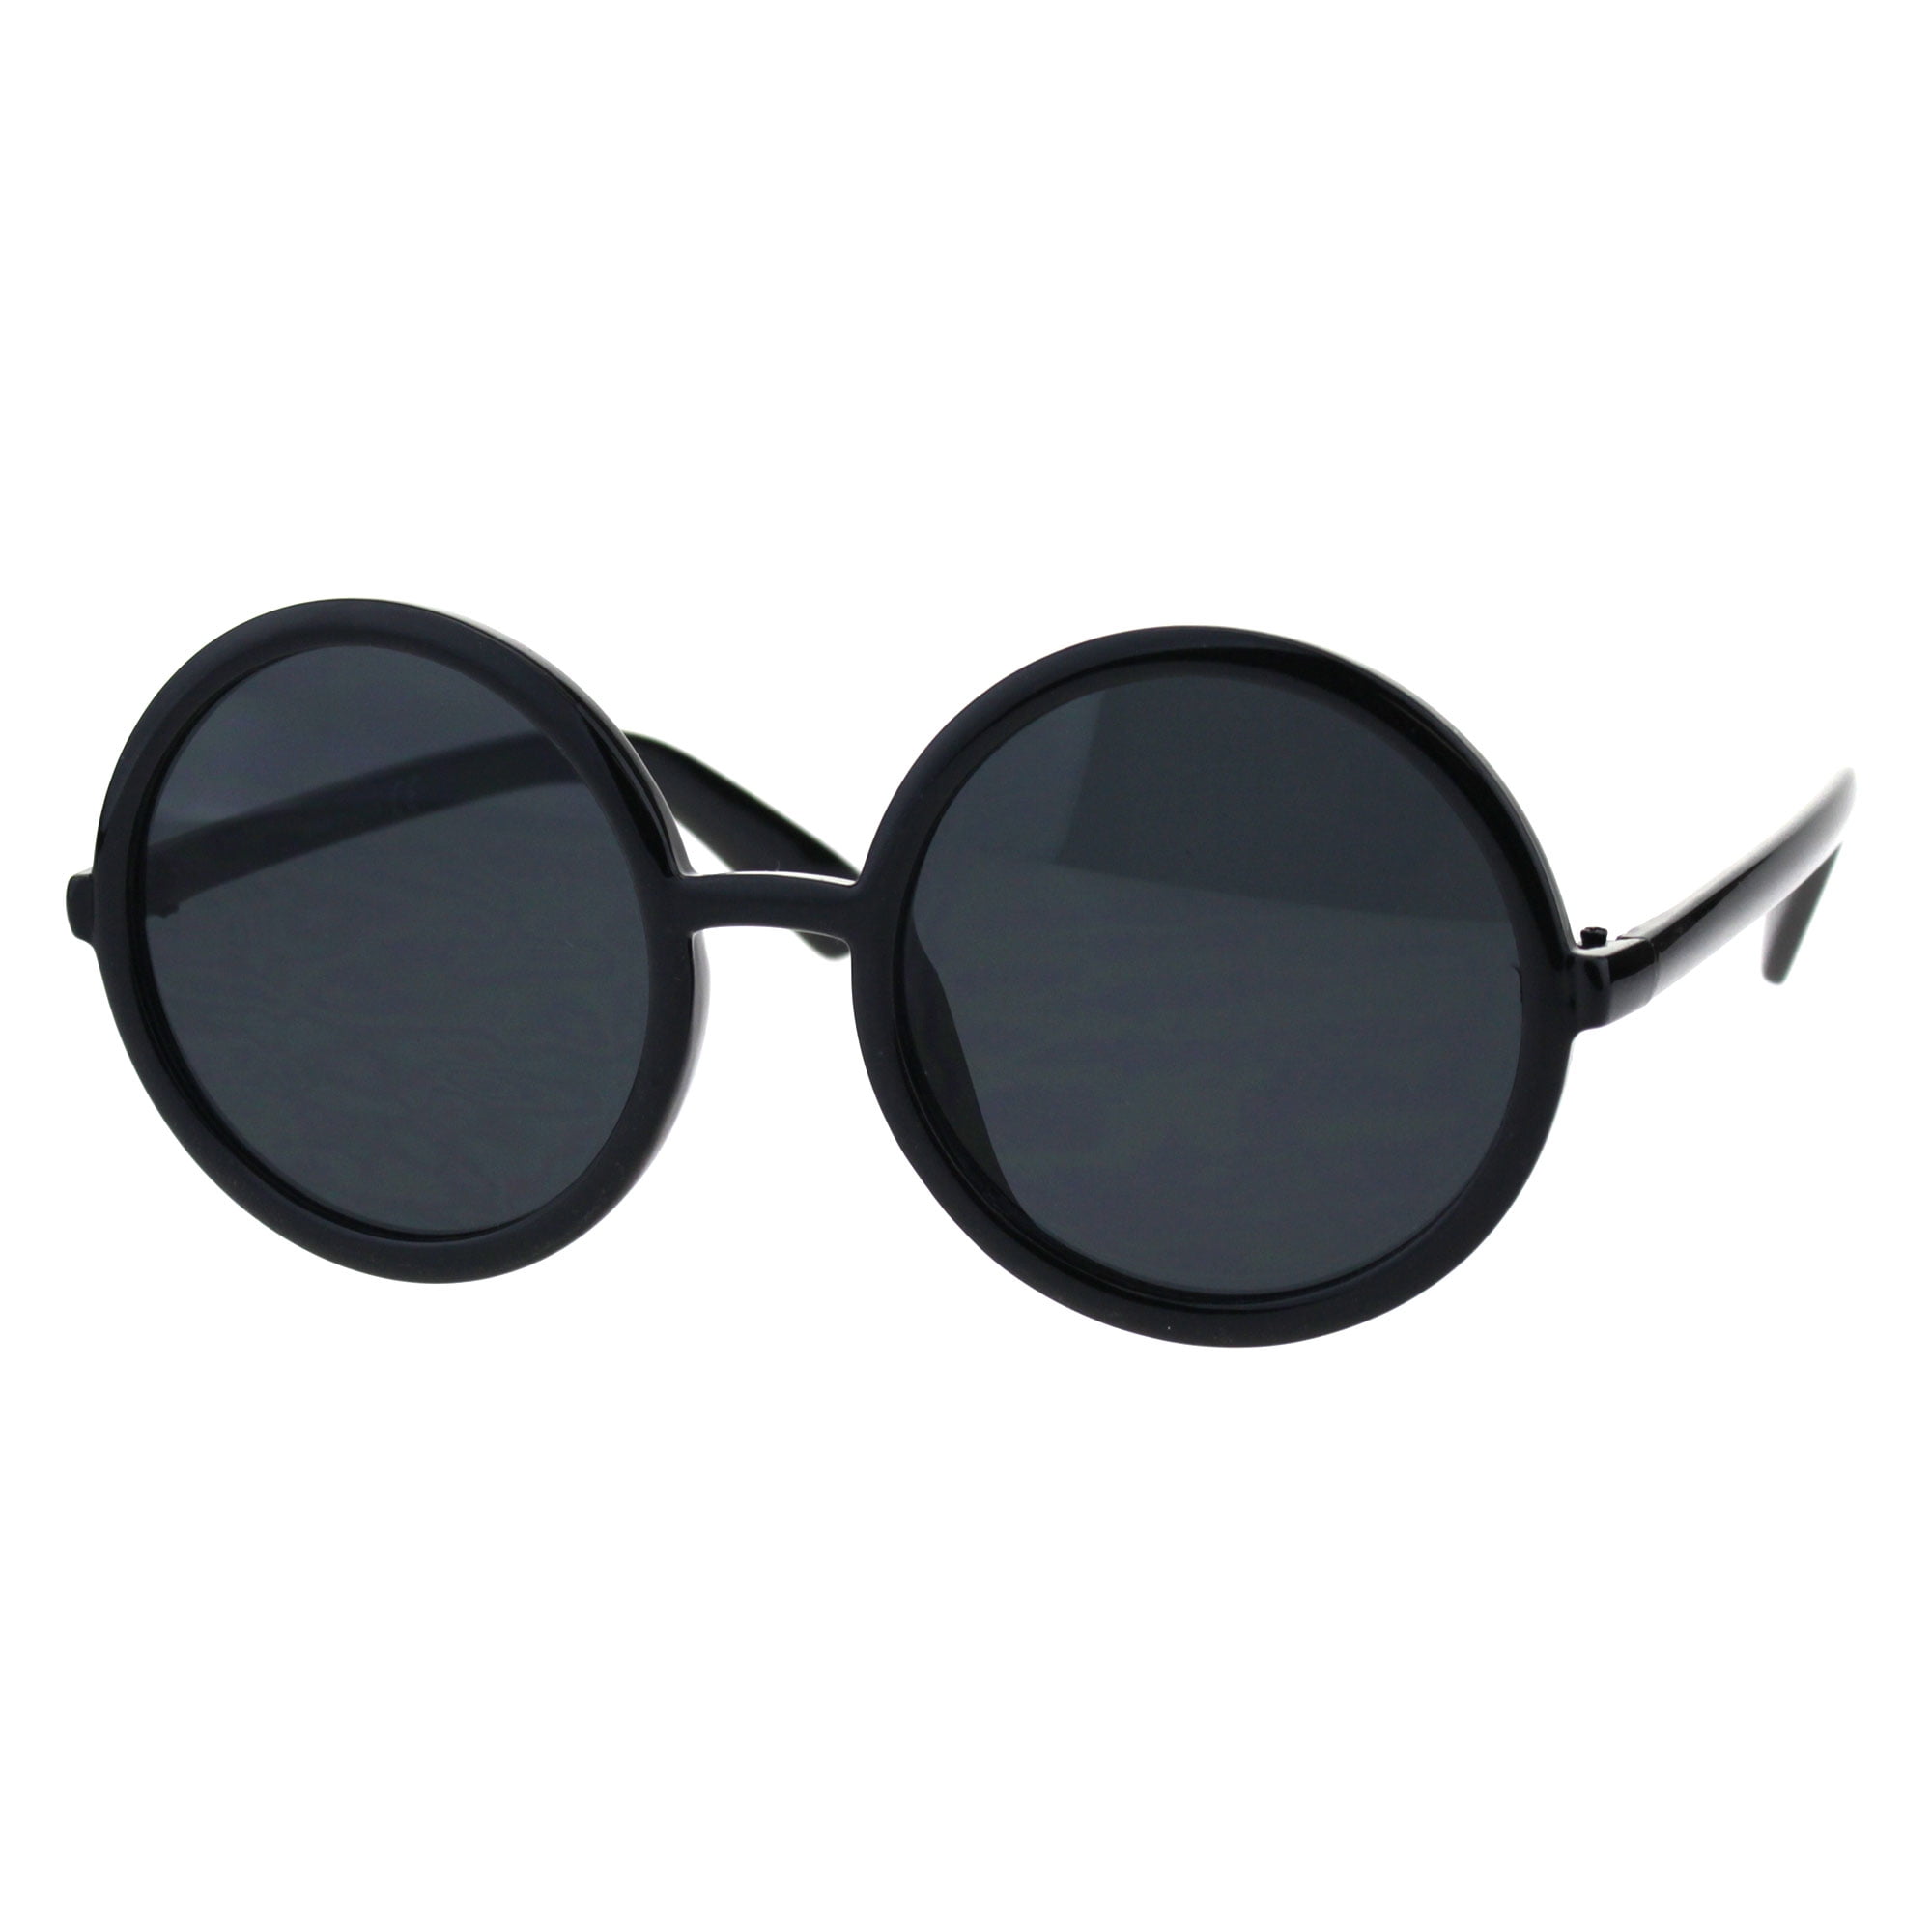 Womens Wizard Round Circle Lens Plastic Mod Fashion Sunglasses Black d4824894 d51e 4240 af31 11421321d63a 1.61d0bf47d58c5cdfa3ab179bb63d2c74